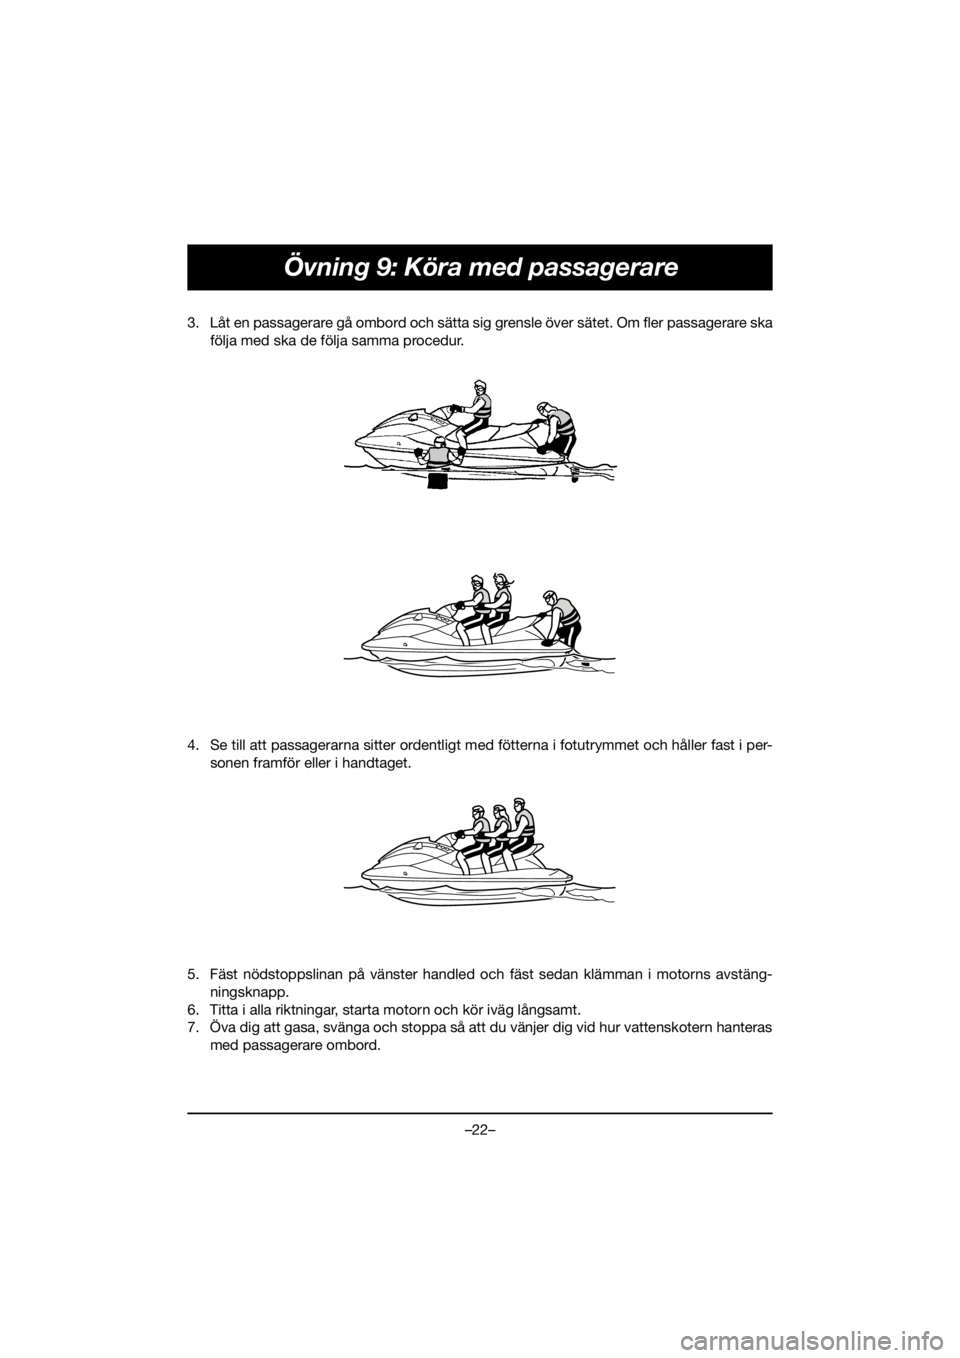 YAMAHA EX 2021  Manuale duso (in Italian) –22–
Övning 9: Köra med passagerare
3. Låt en passagerare gå ombord och sätta sig grensle över sätet. Om fler passagerare ska
följa med ska de följa samma procedur. 
4. Se till att passag